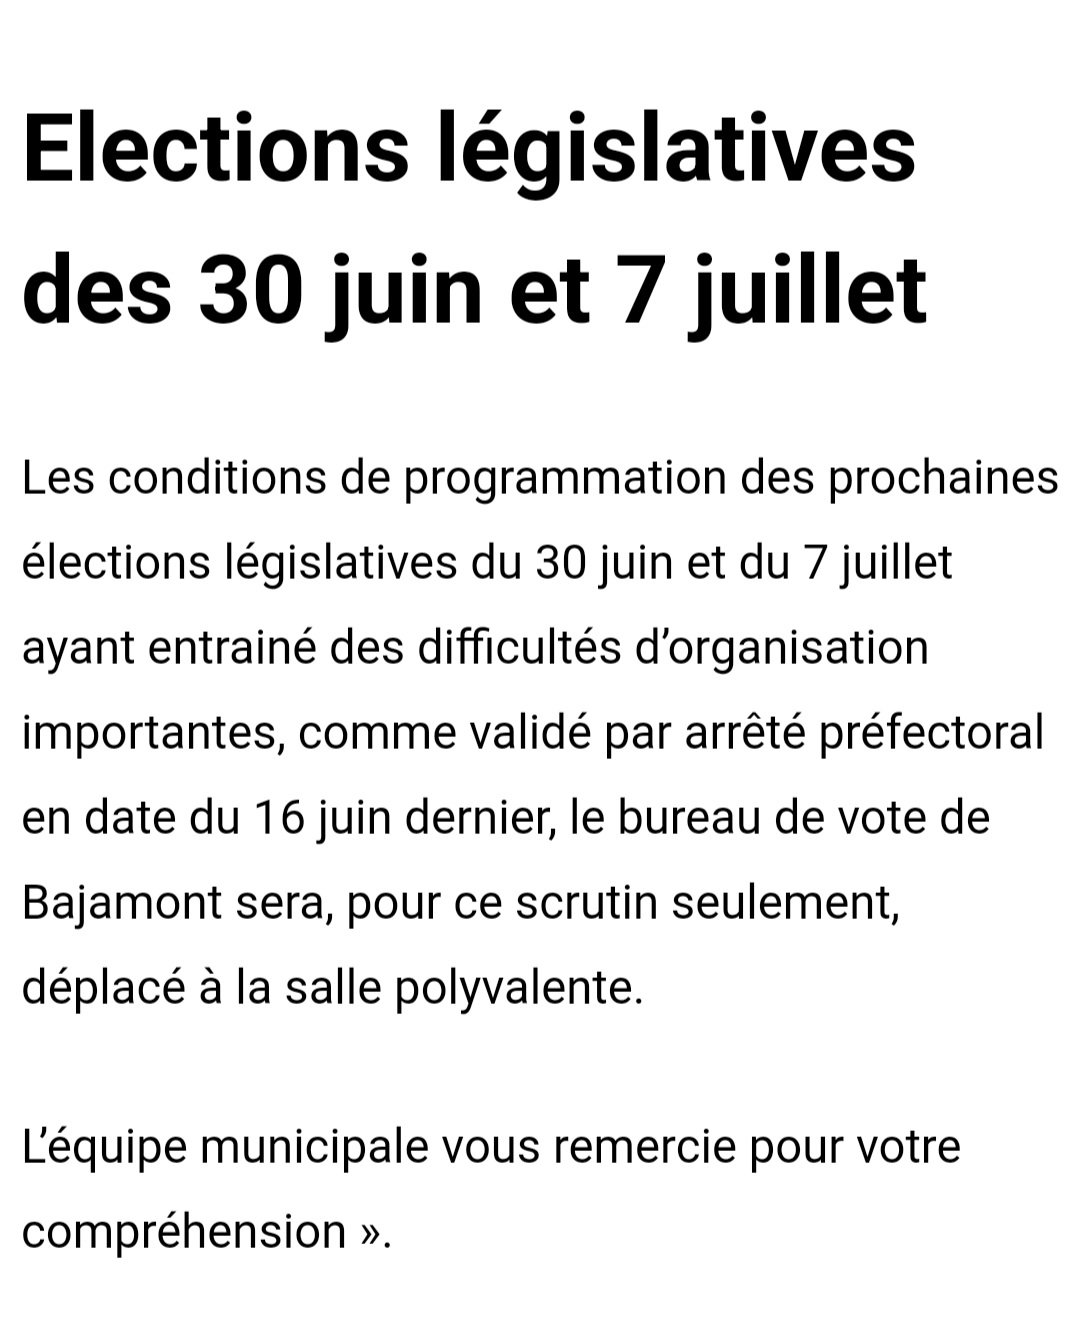 Elections législatives des 30 juin et 7 juillet